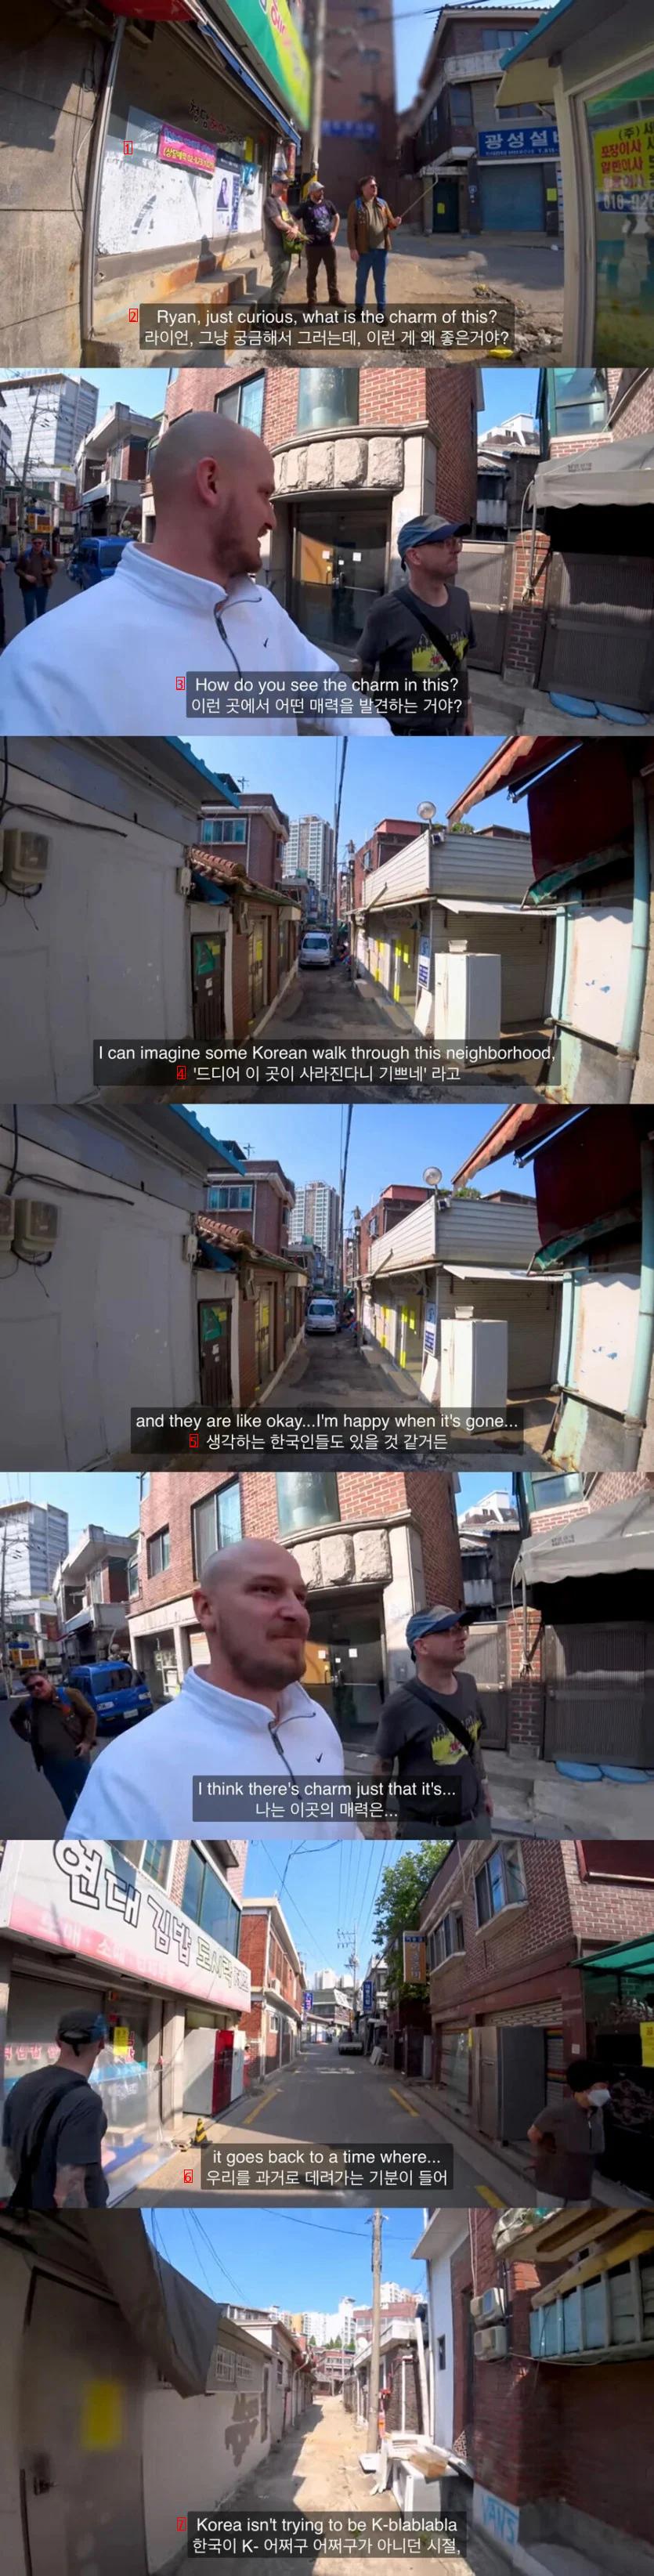 외국인이 한국의 낡은 동네를 좋아하는 이유.jpg